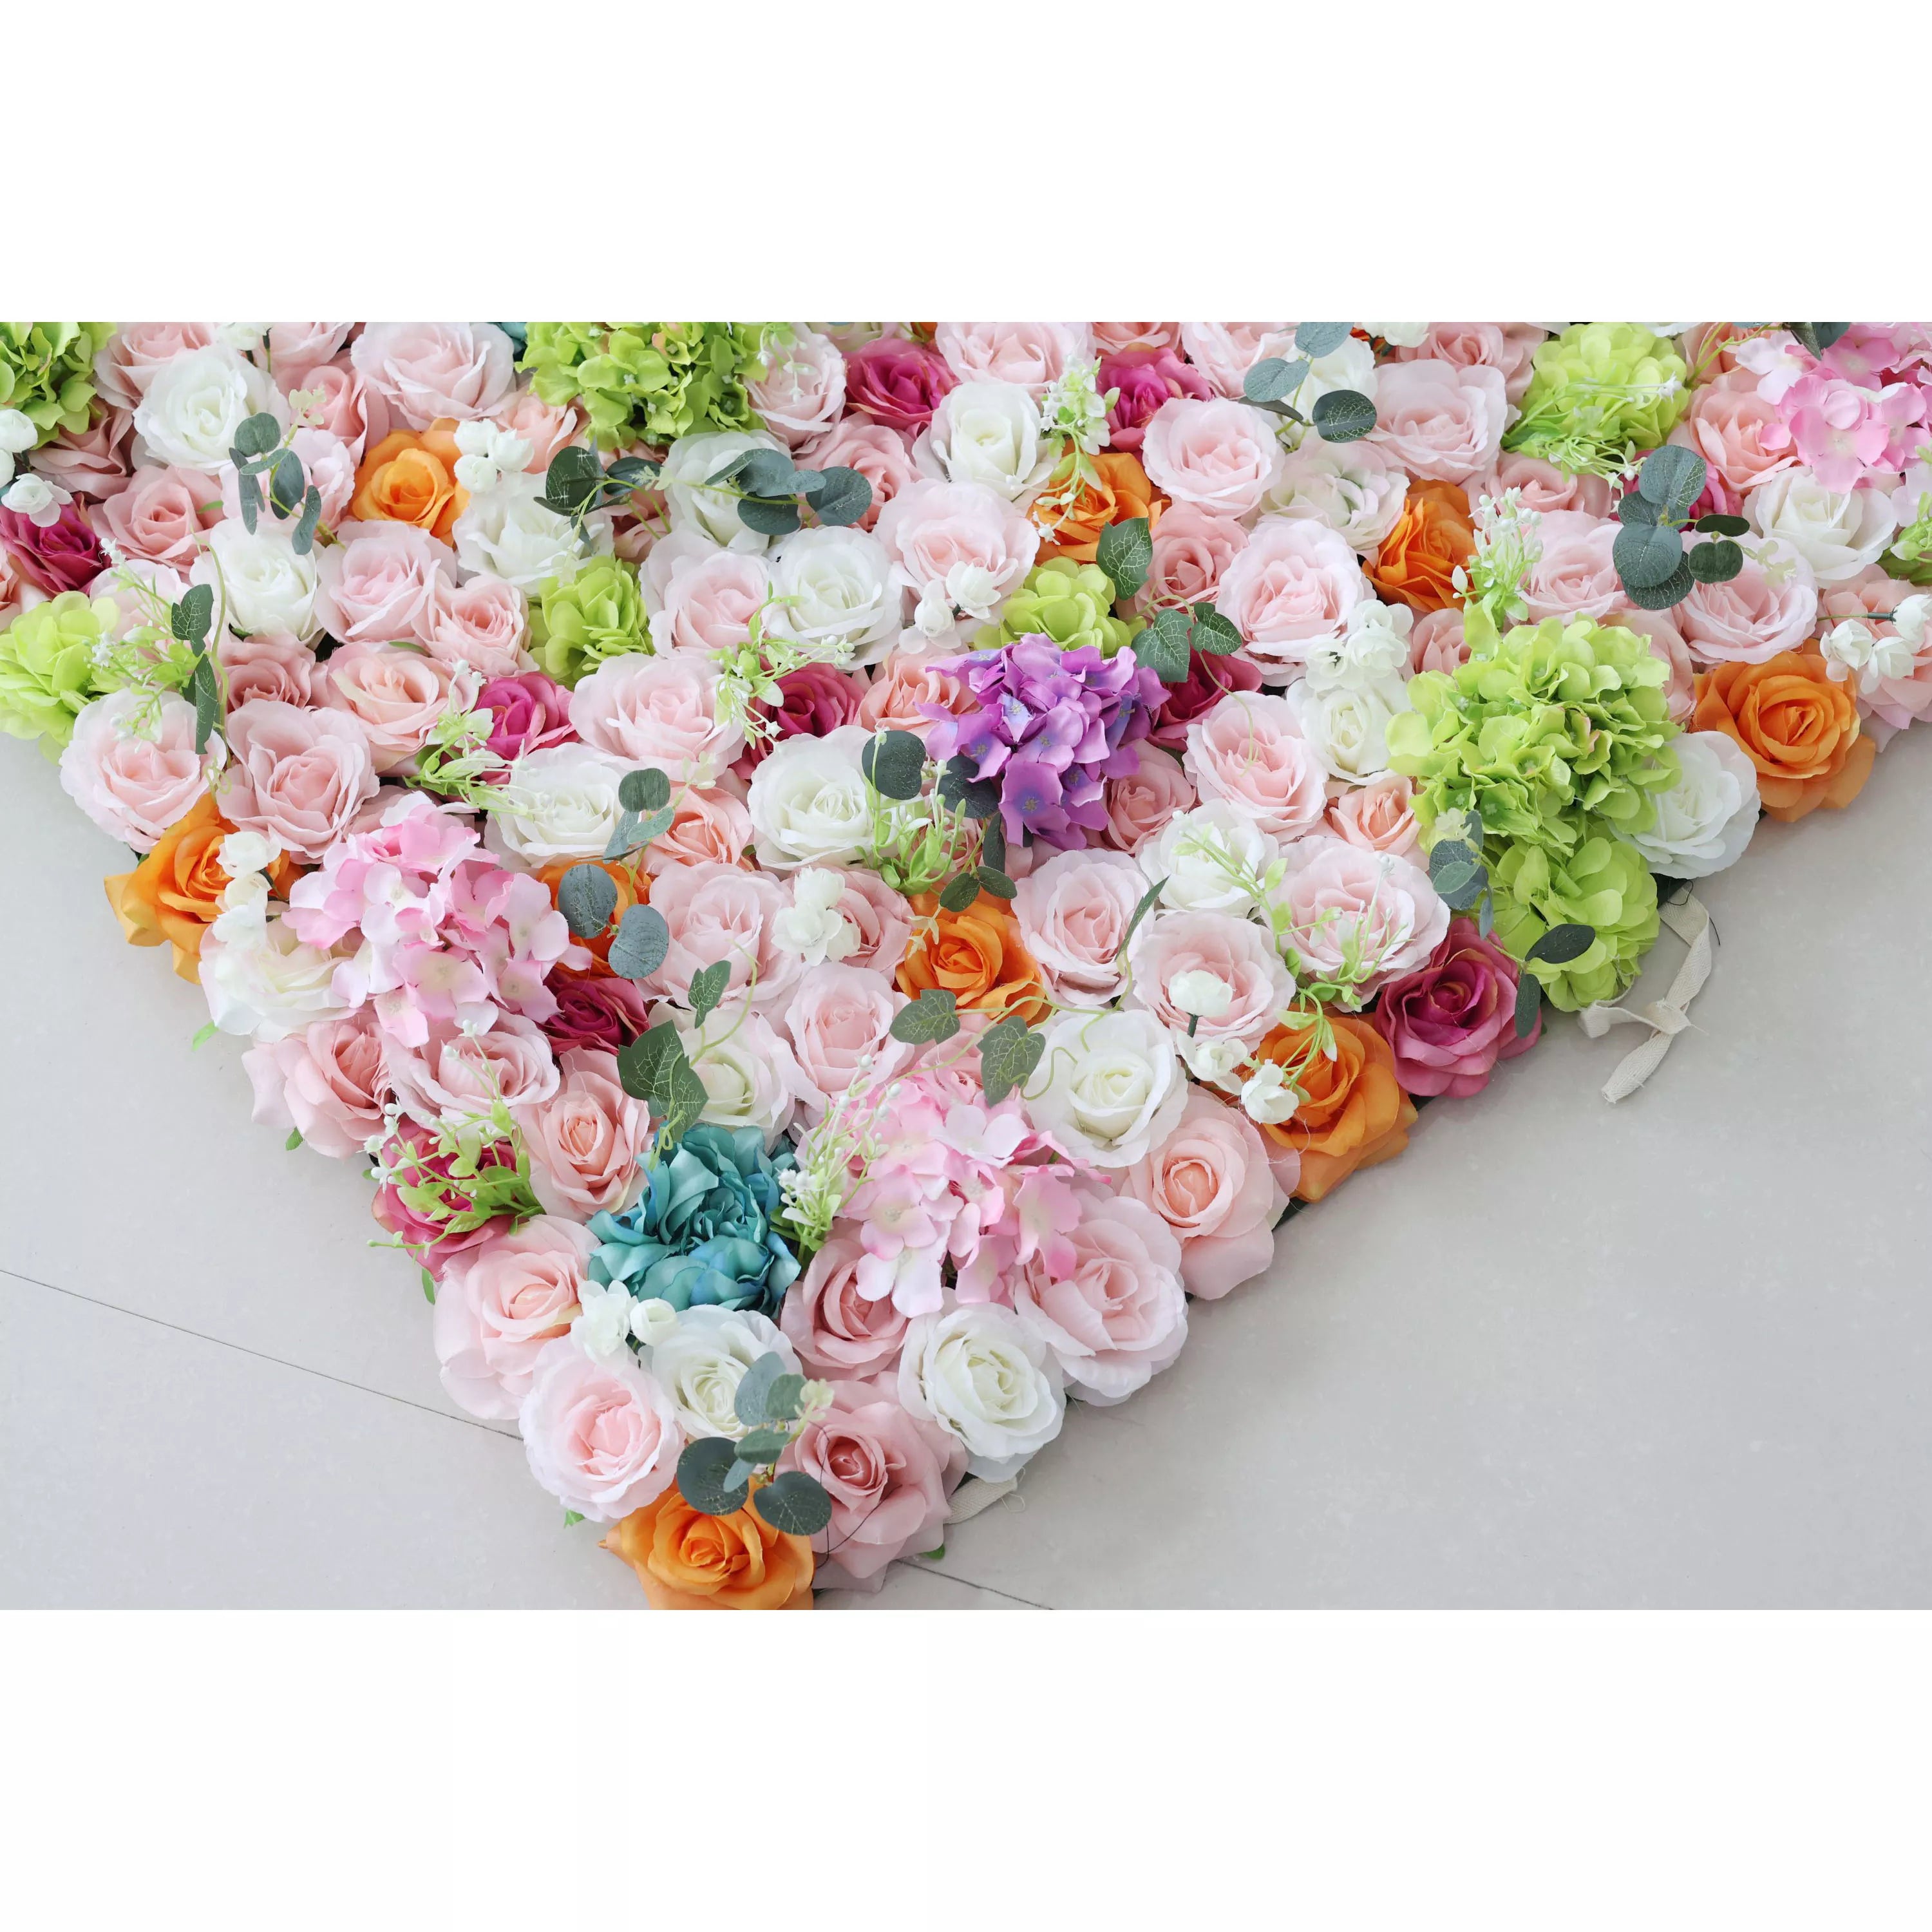 خلفية جدار أزهار زهور اصطناعية: جالا ساحرا للحديقة-رقصة مبهرة بألوان رقيقة وإزهار نابضة بالحياة.--